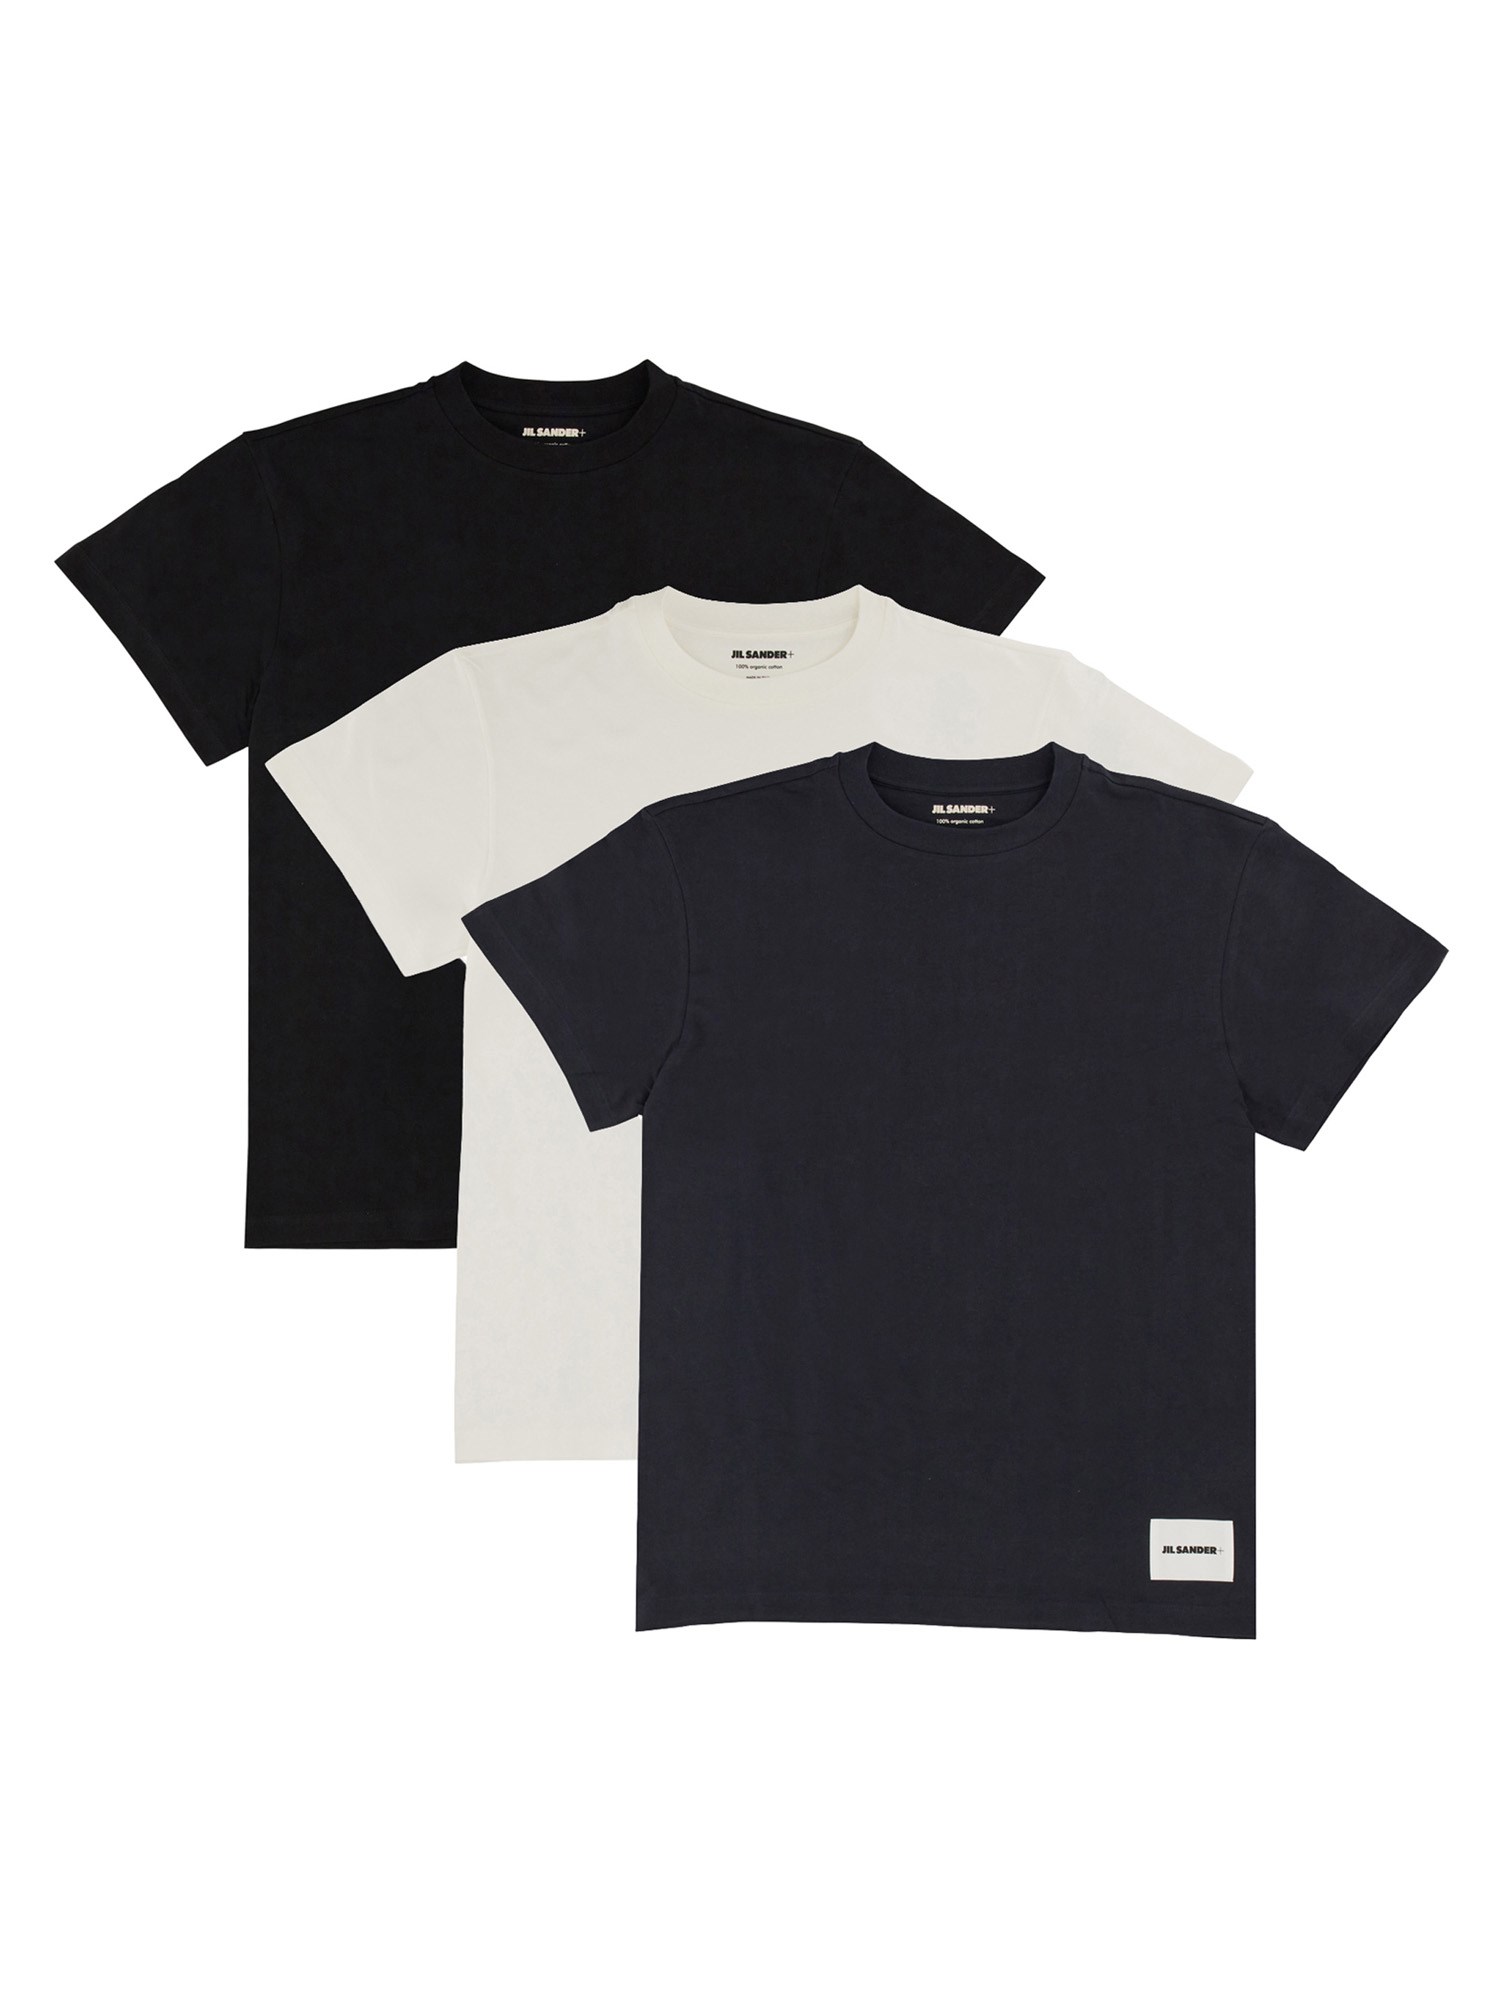 Jil Sander jil sander pack of three t-shirts